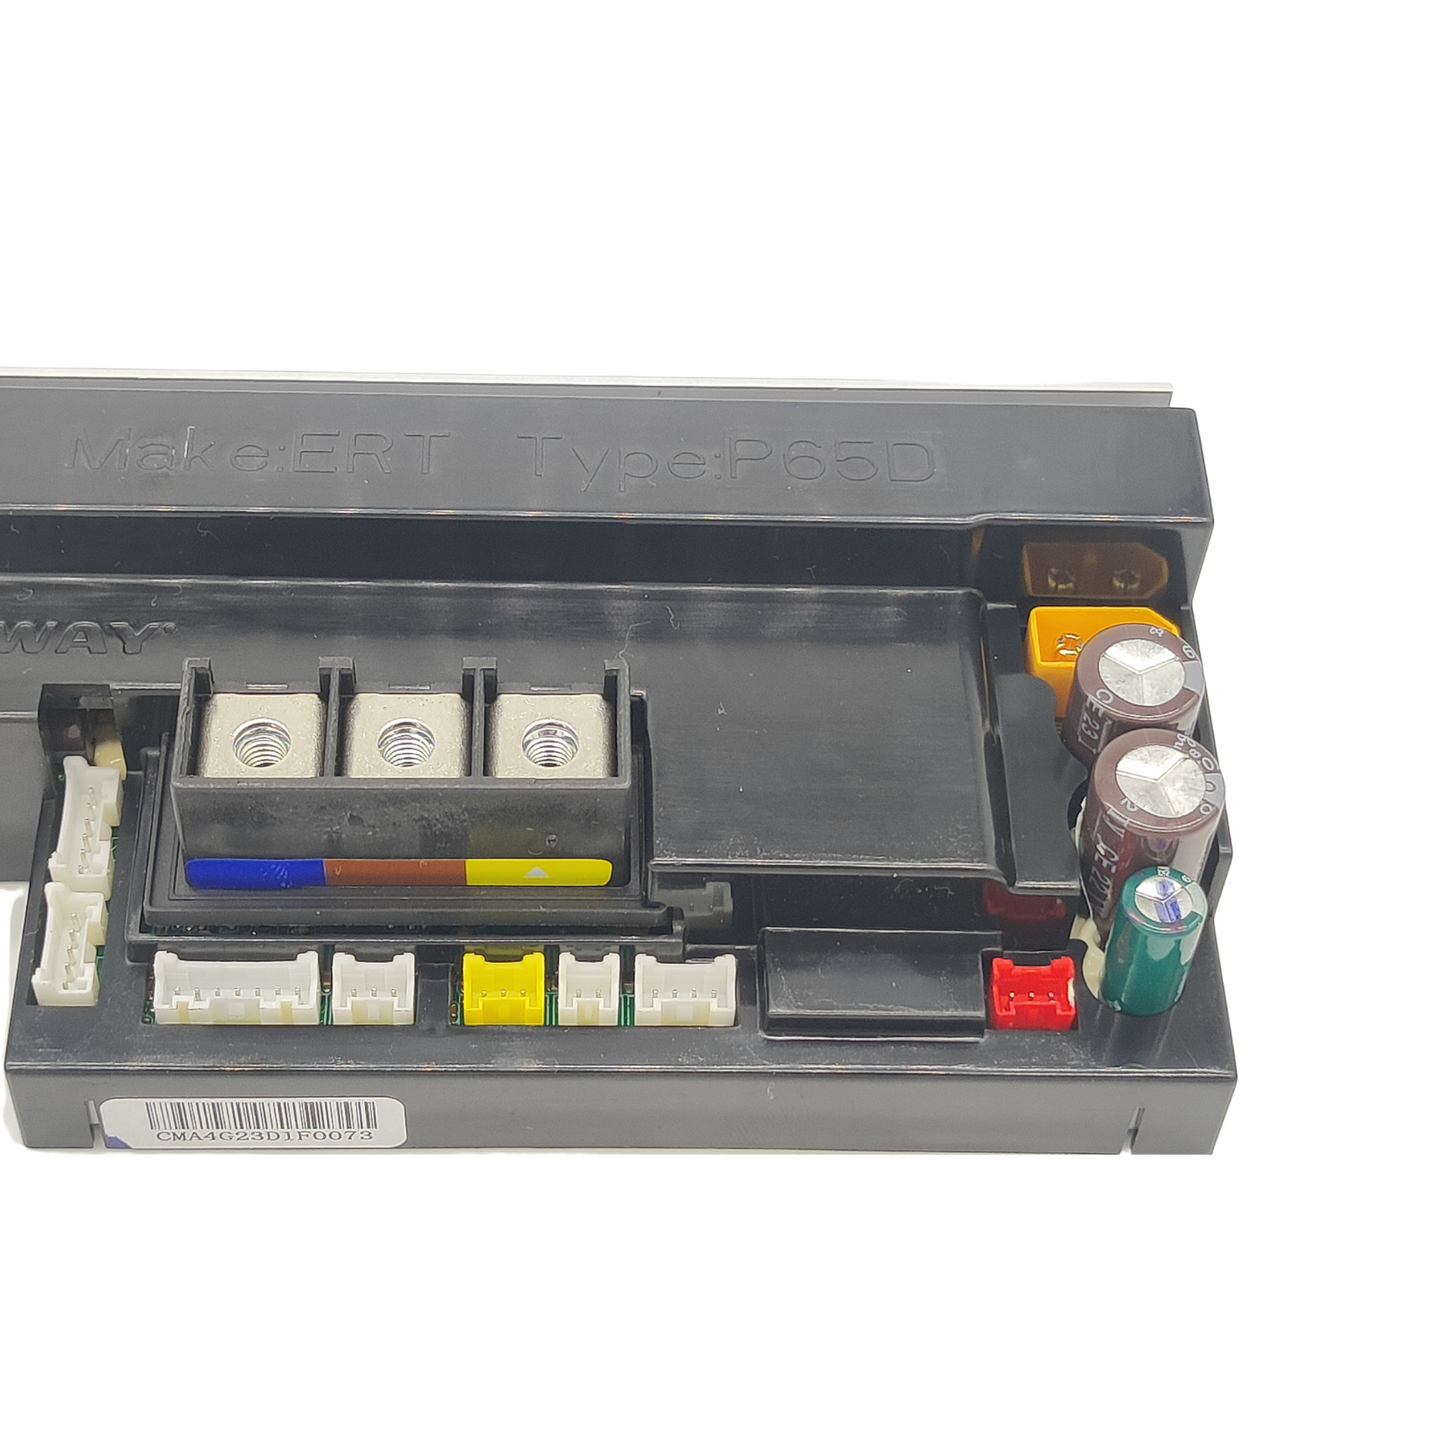 Ninebot Segway P100 controller control unit original